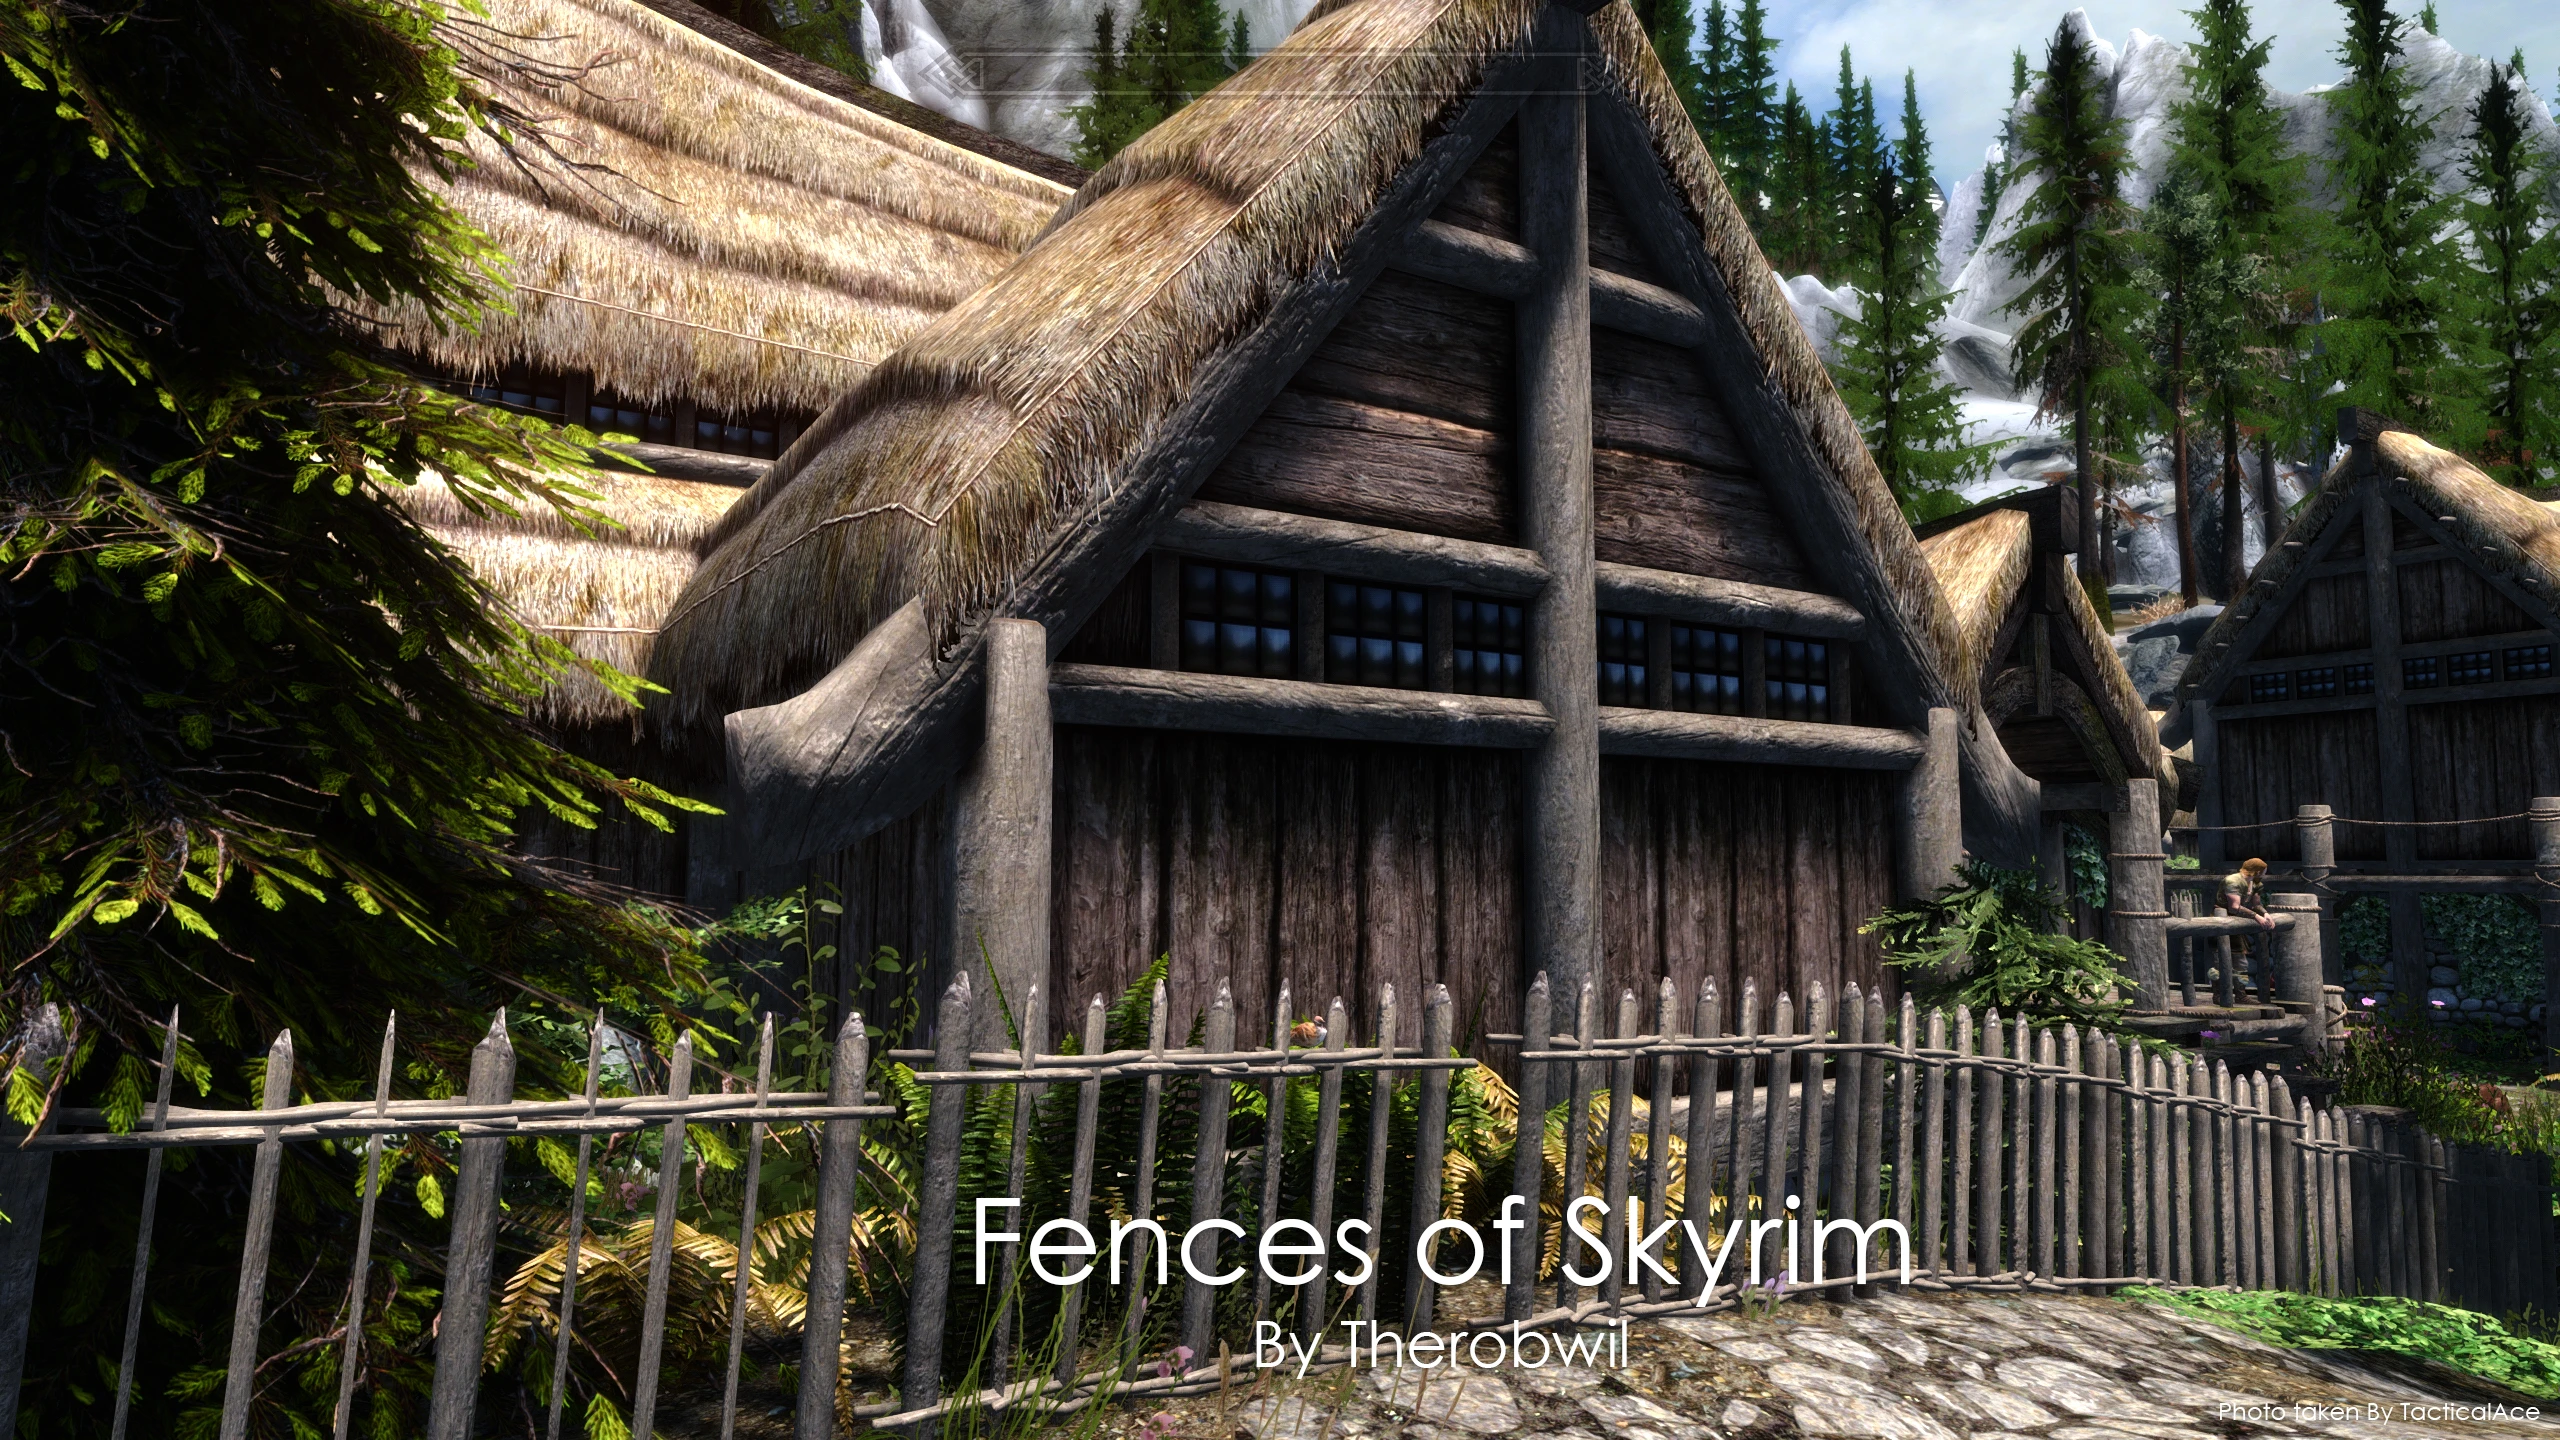 Fences of Skyrim.